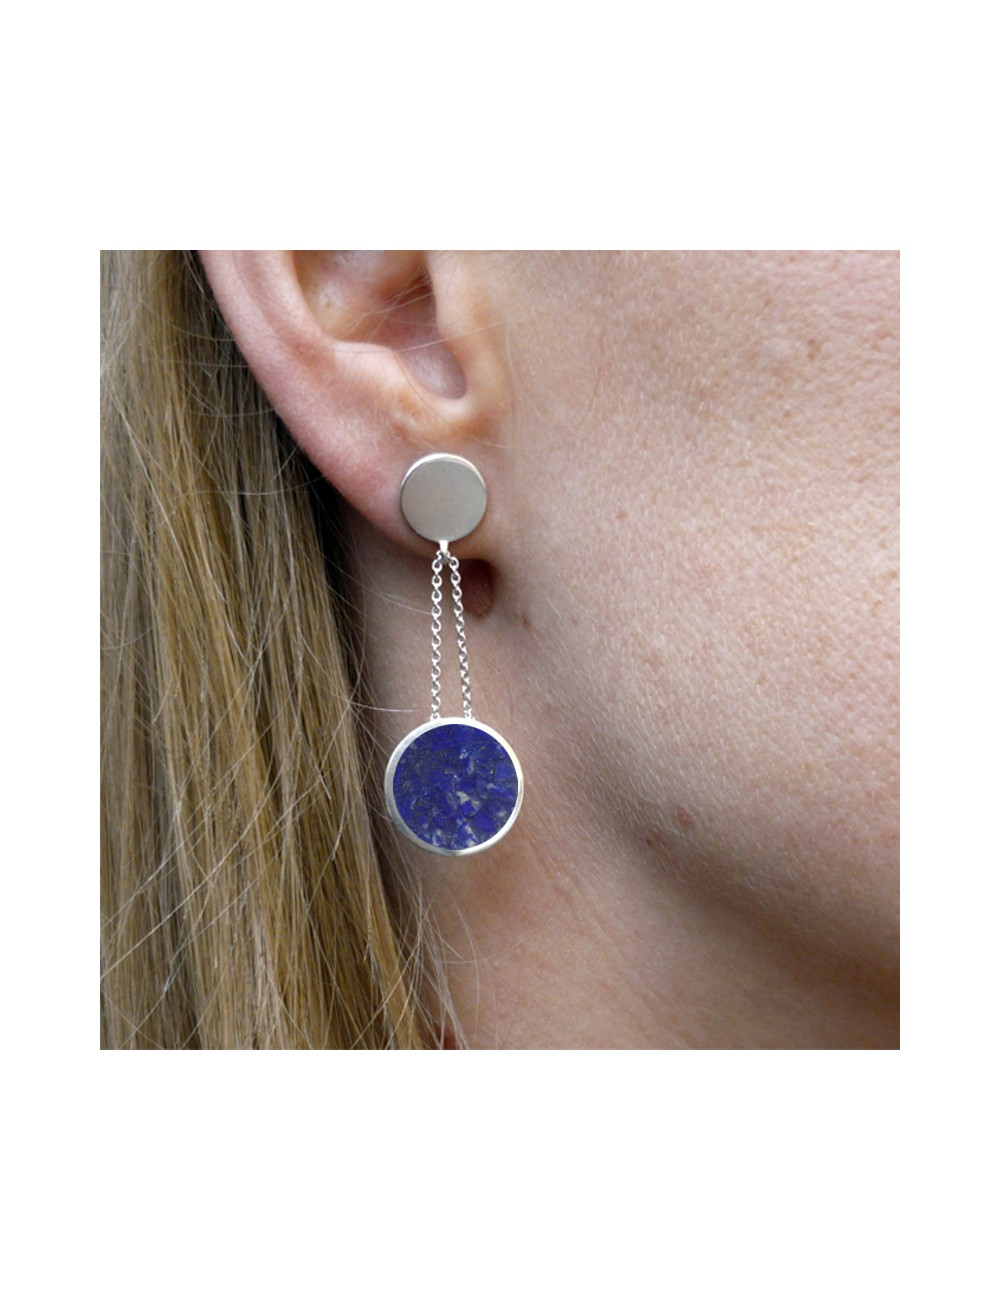 Boucles d'oreilles argent et Lapis-Lazuli